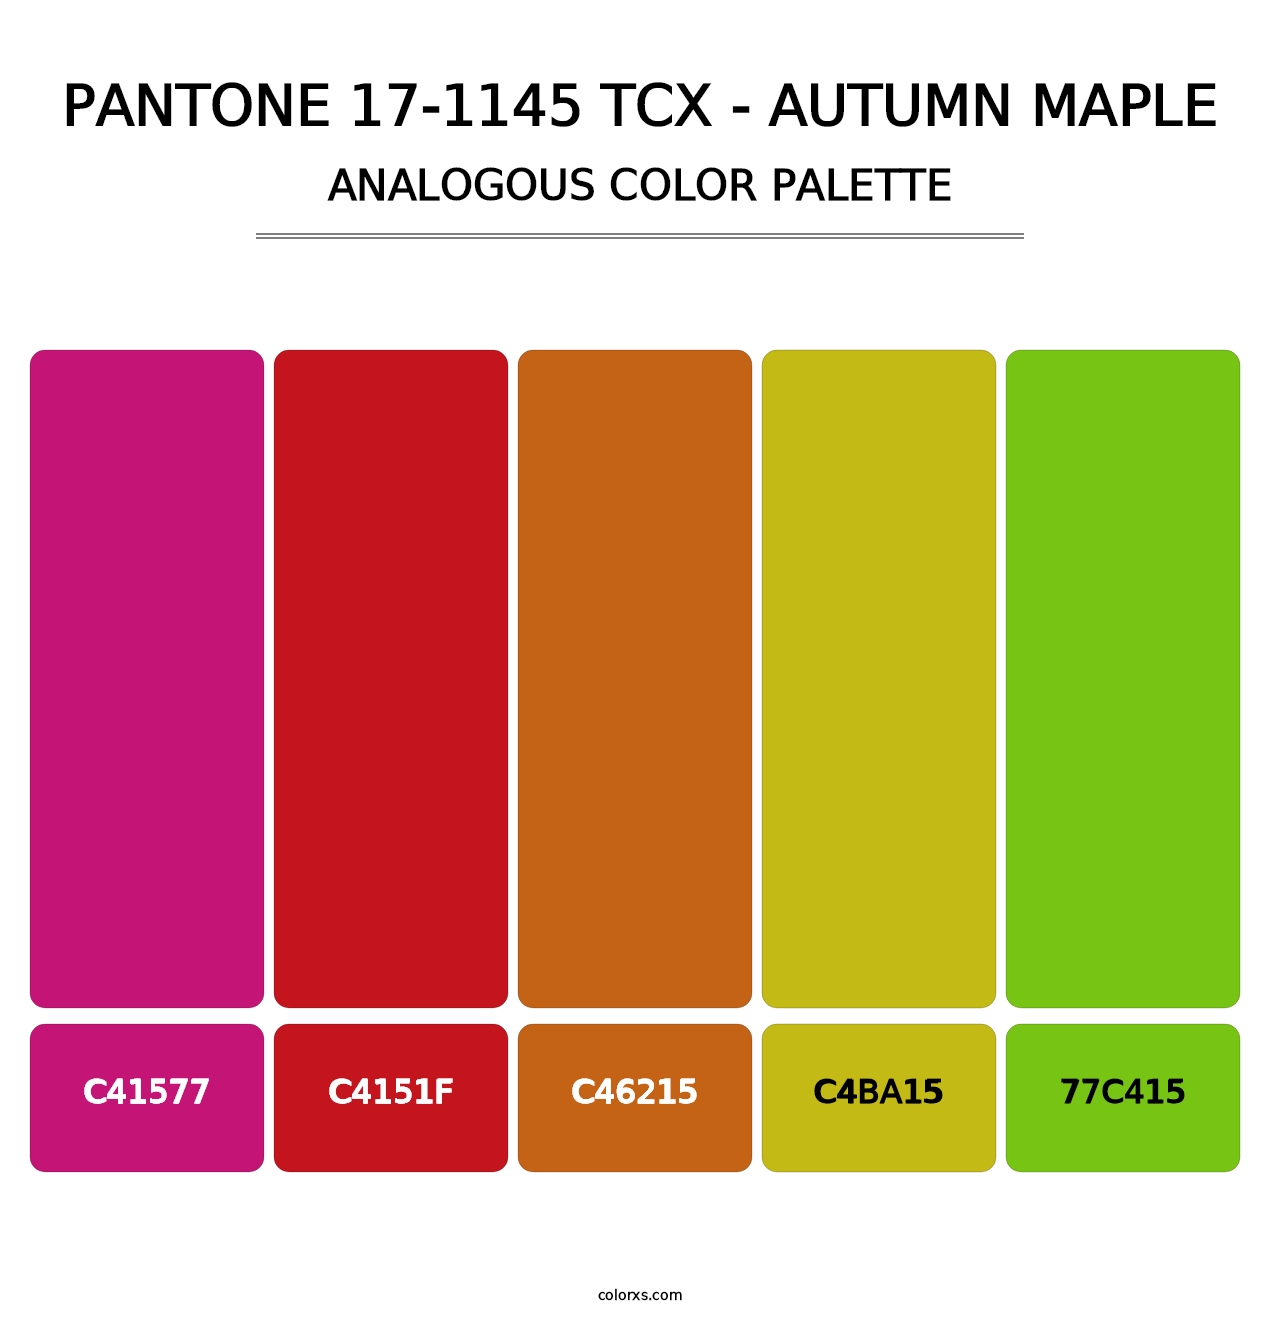 PANTONE 17-1145 TCX - Autumn Maple - Analogous Color Palette